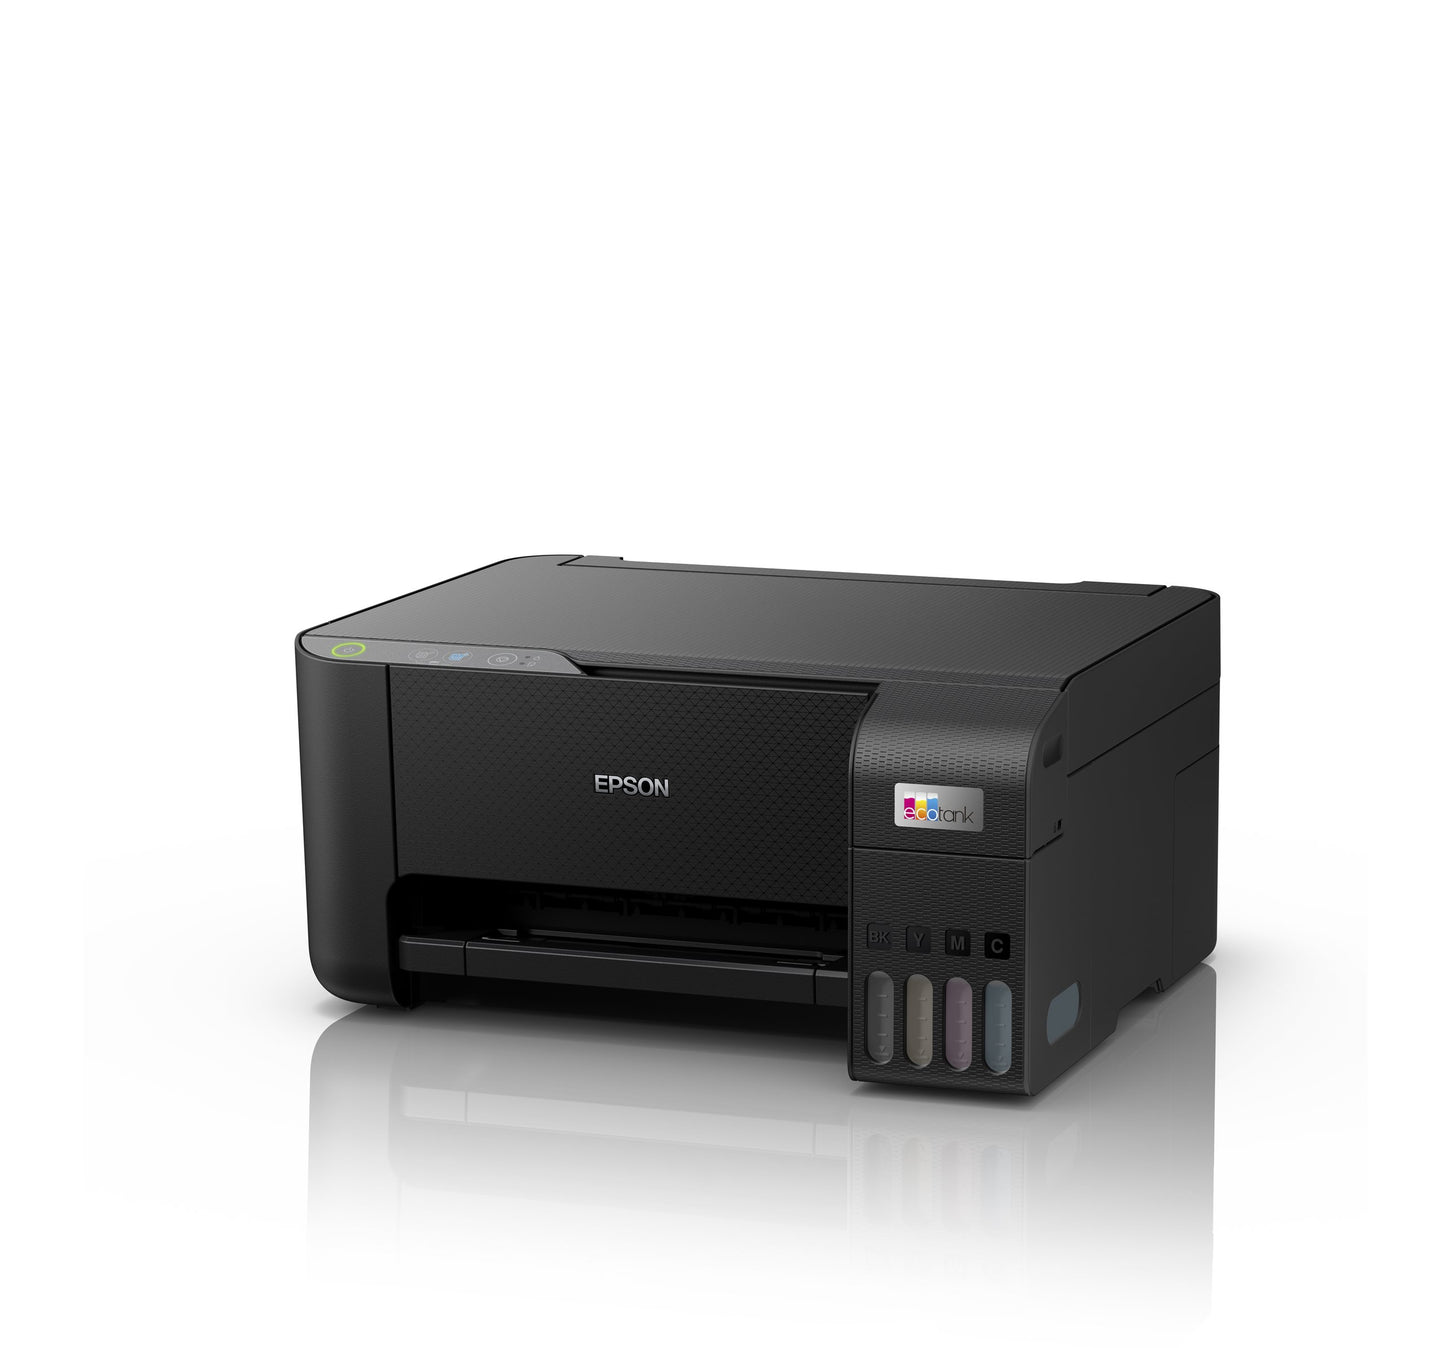 Impresoras multifunción, ¿cómo y para qué son? » COPIMAR Sistemas Impresión